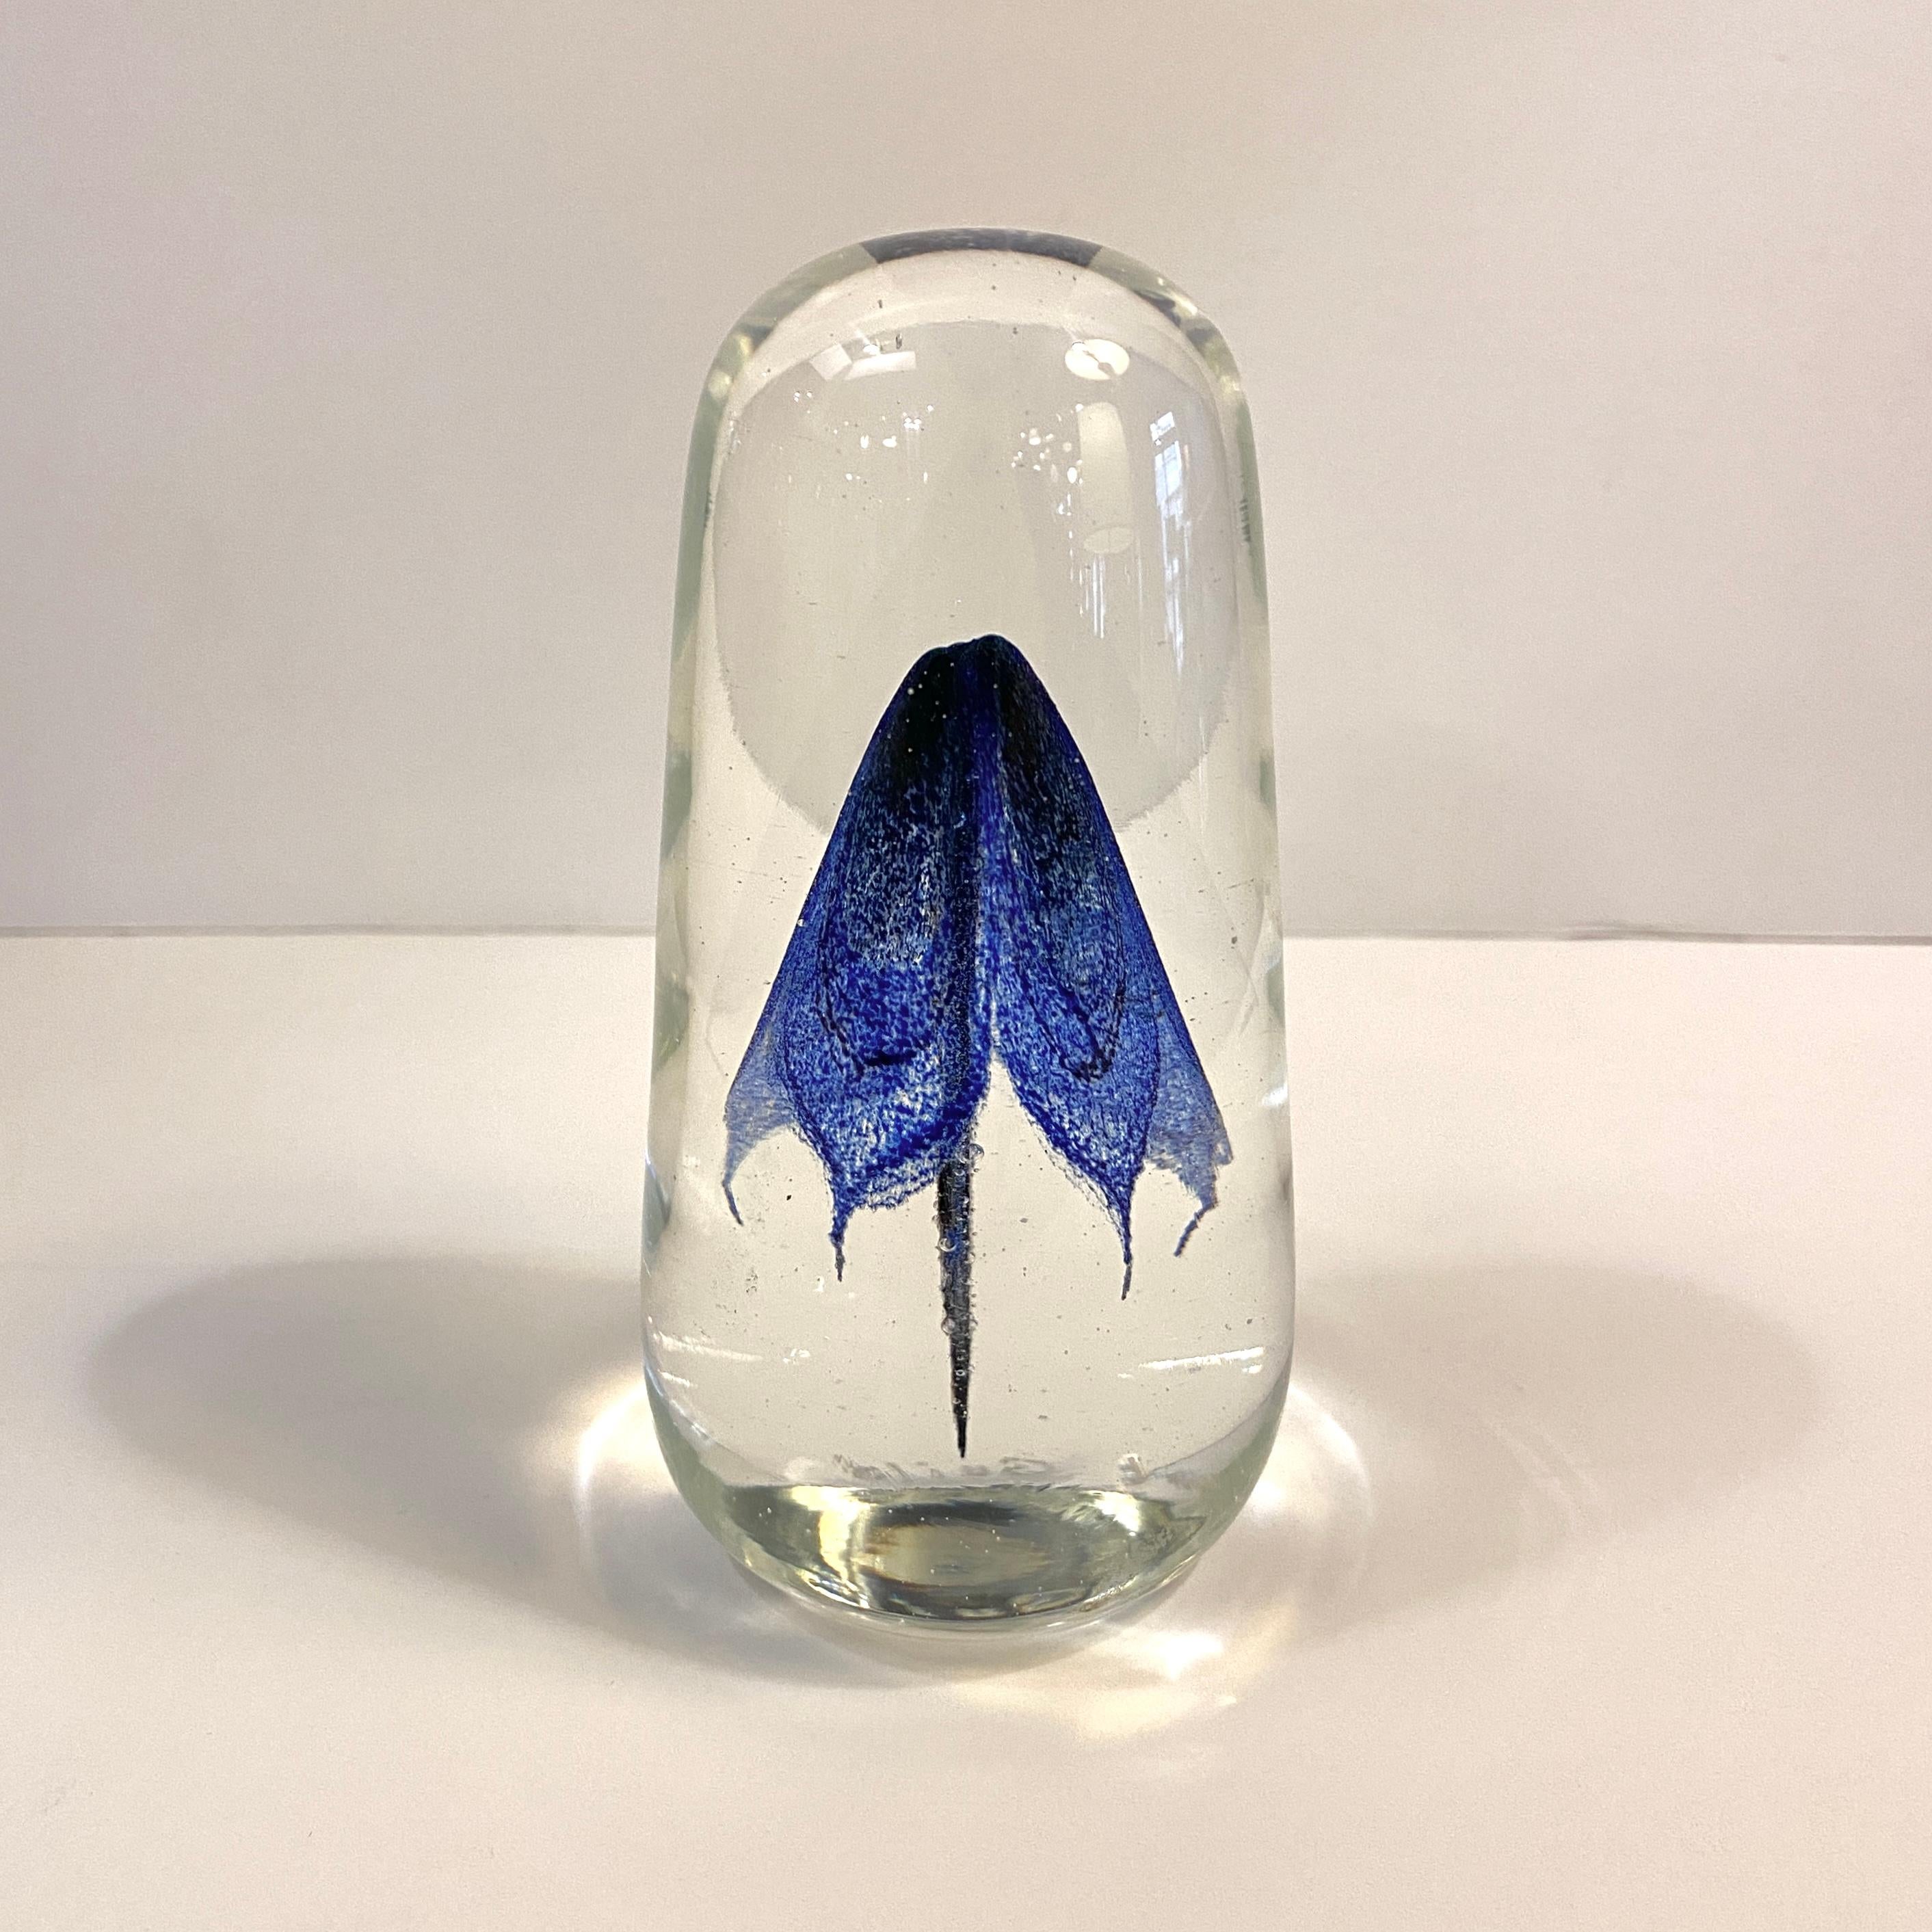 Der handwerklich gefertigte, mundgeblasene Kunstglas-Briefbeschwerer der Rochester Folk Art Guild zeichnet sich durch eine anmutige, kobaltblaue Form aus, die an eine Qualle oder eine Blume erinnert und von einer hohen, länglichen Form aus klarem